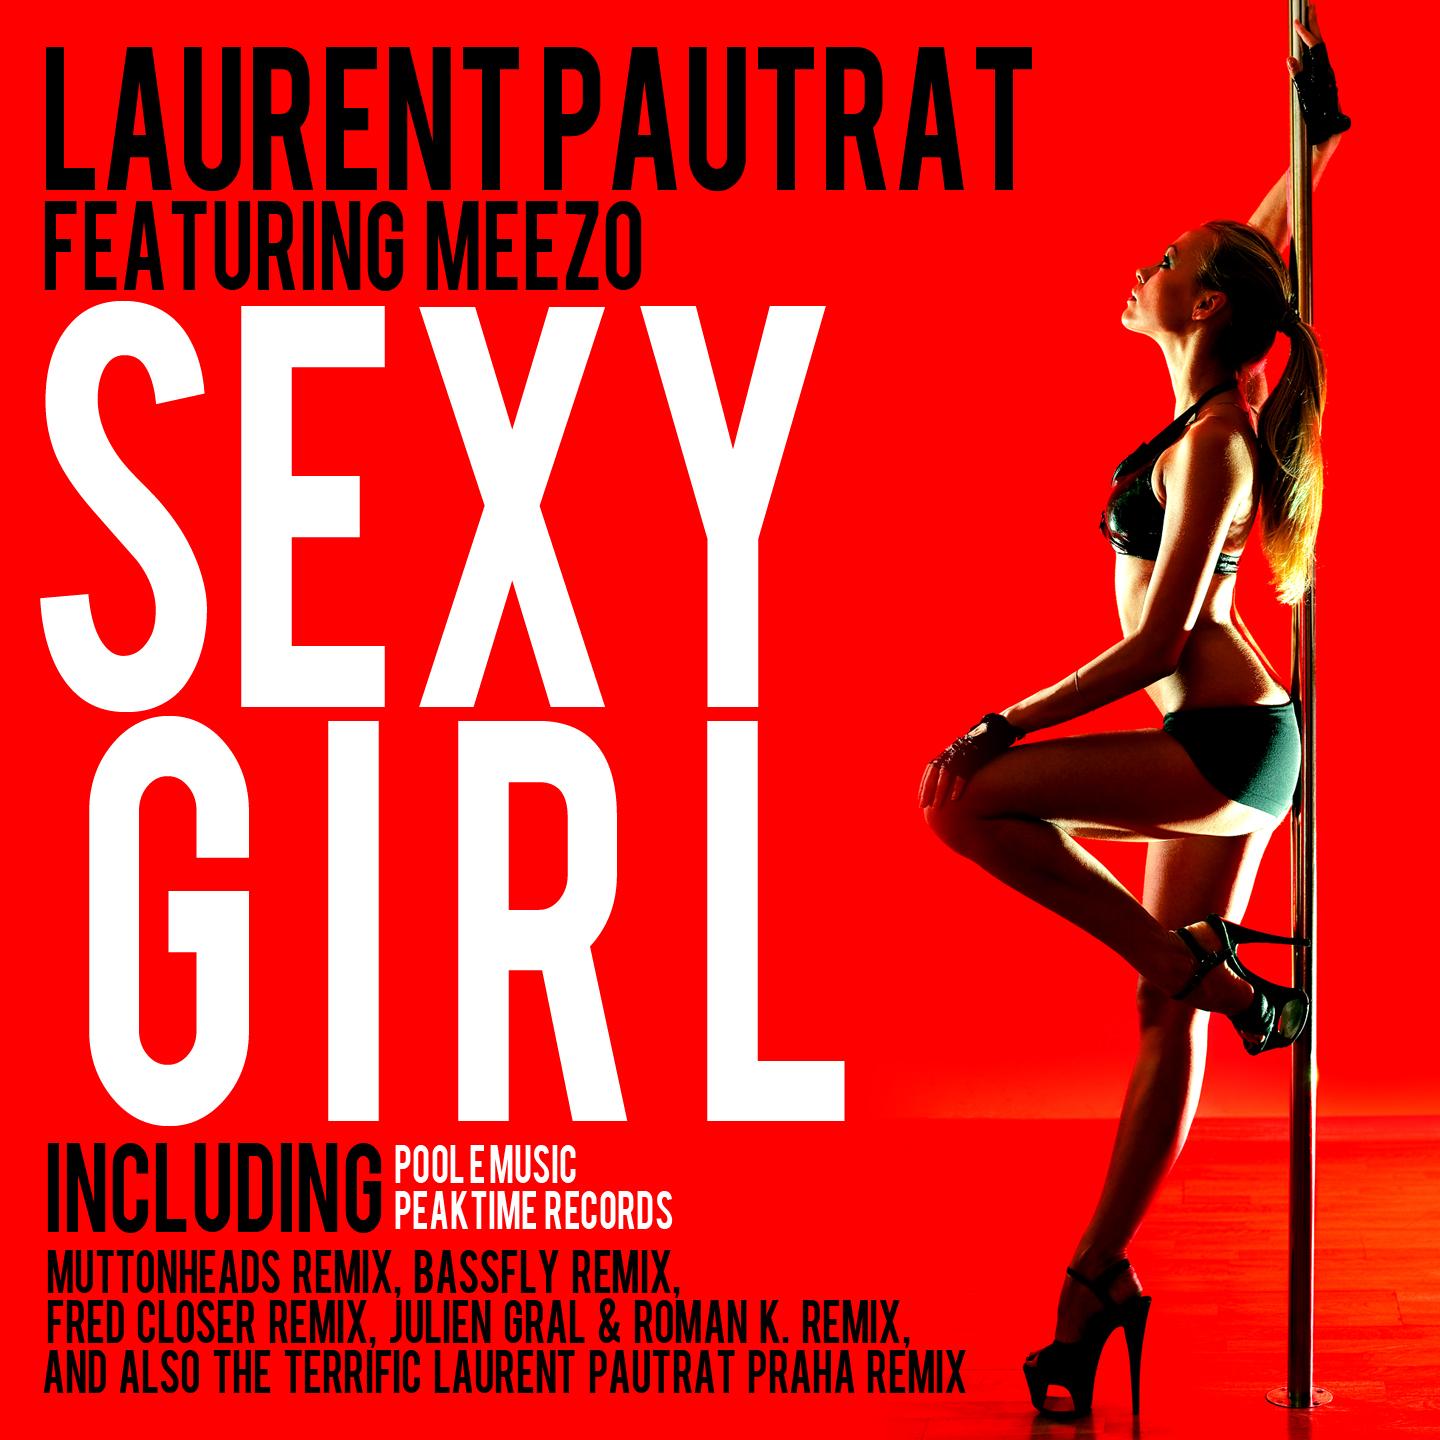 Laurent Pautrat feat Meezo - Sexy girl EP